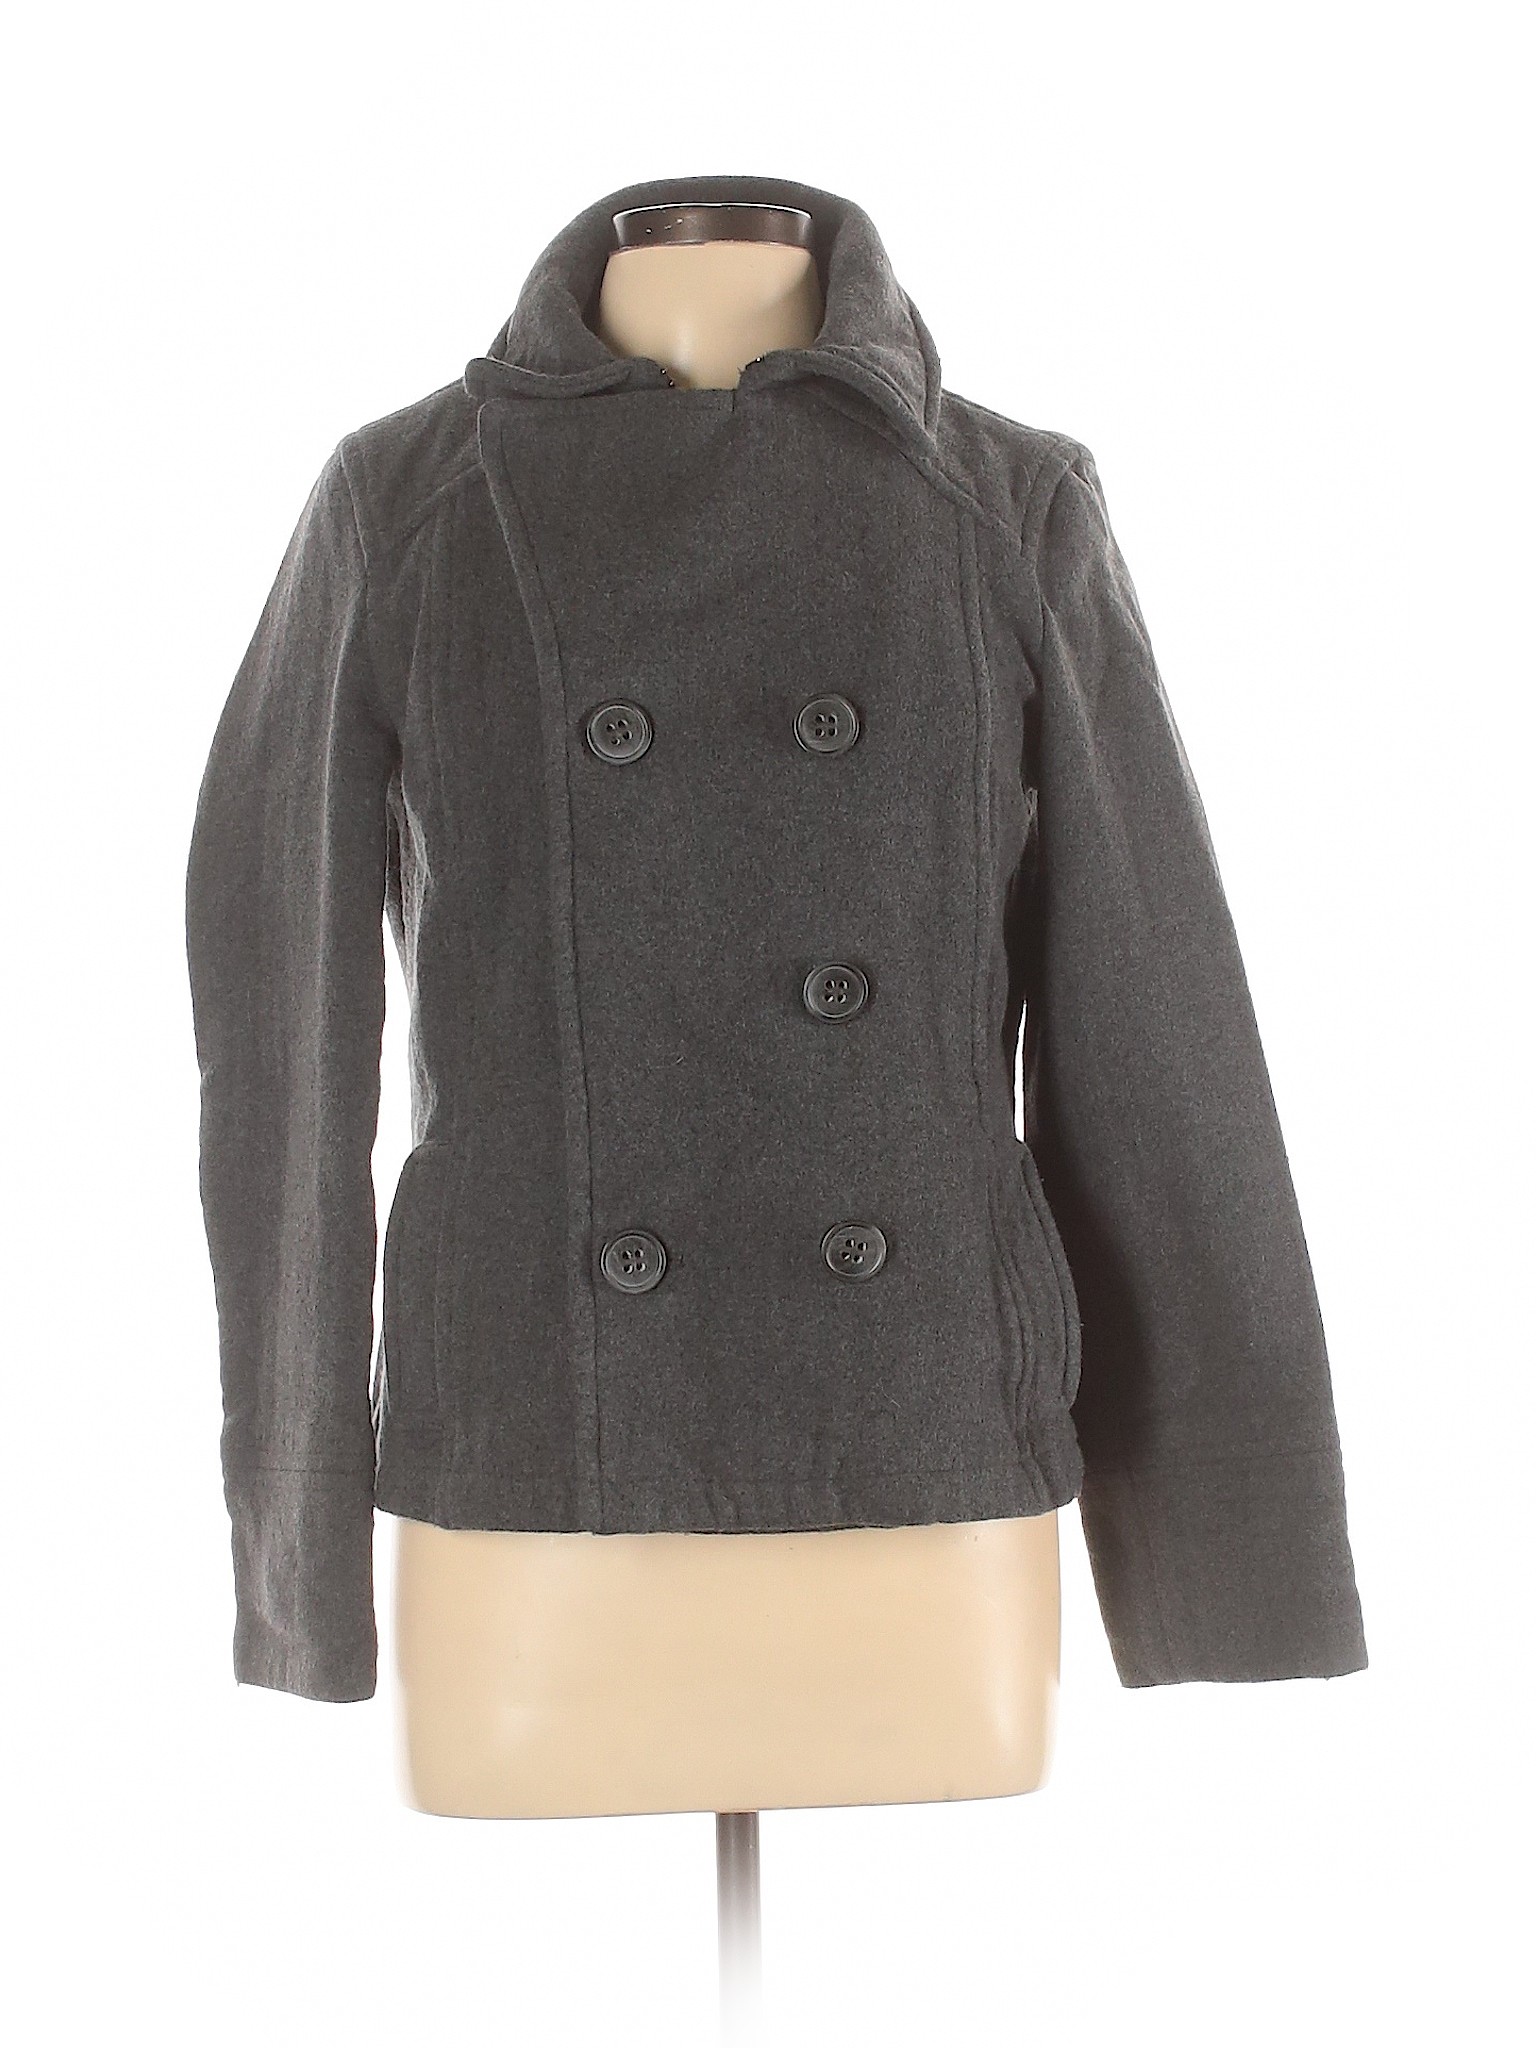 Aeropostale Women Gray Coat L | eBay